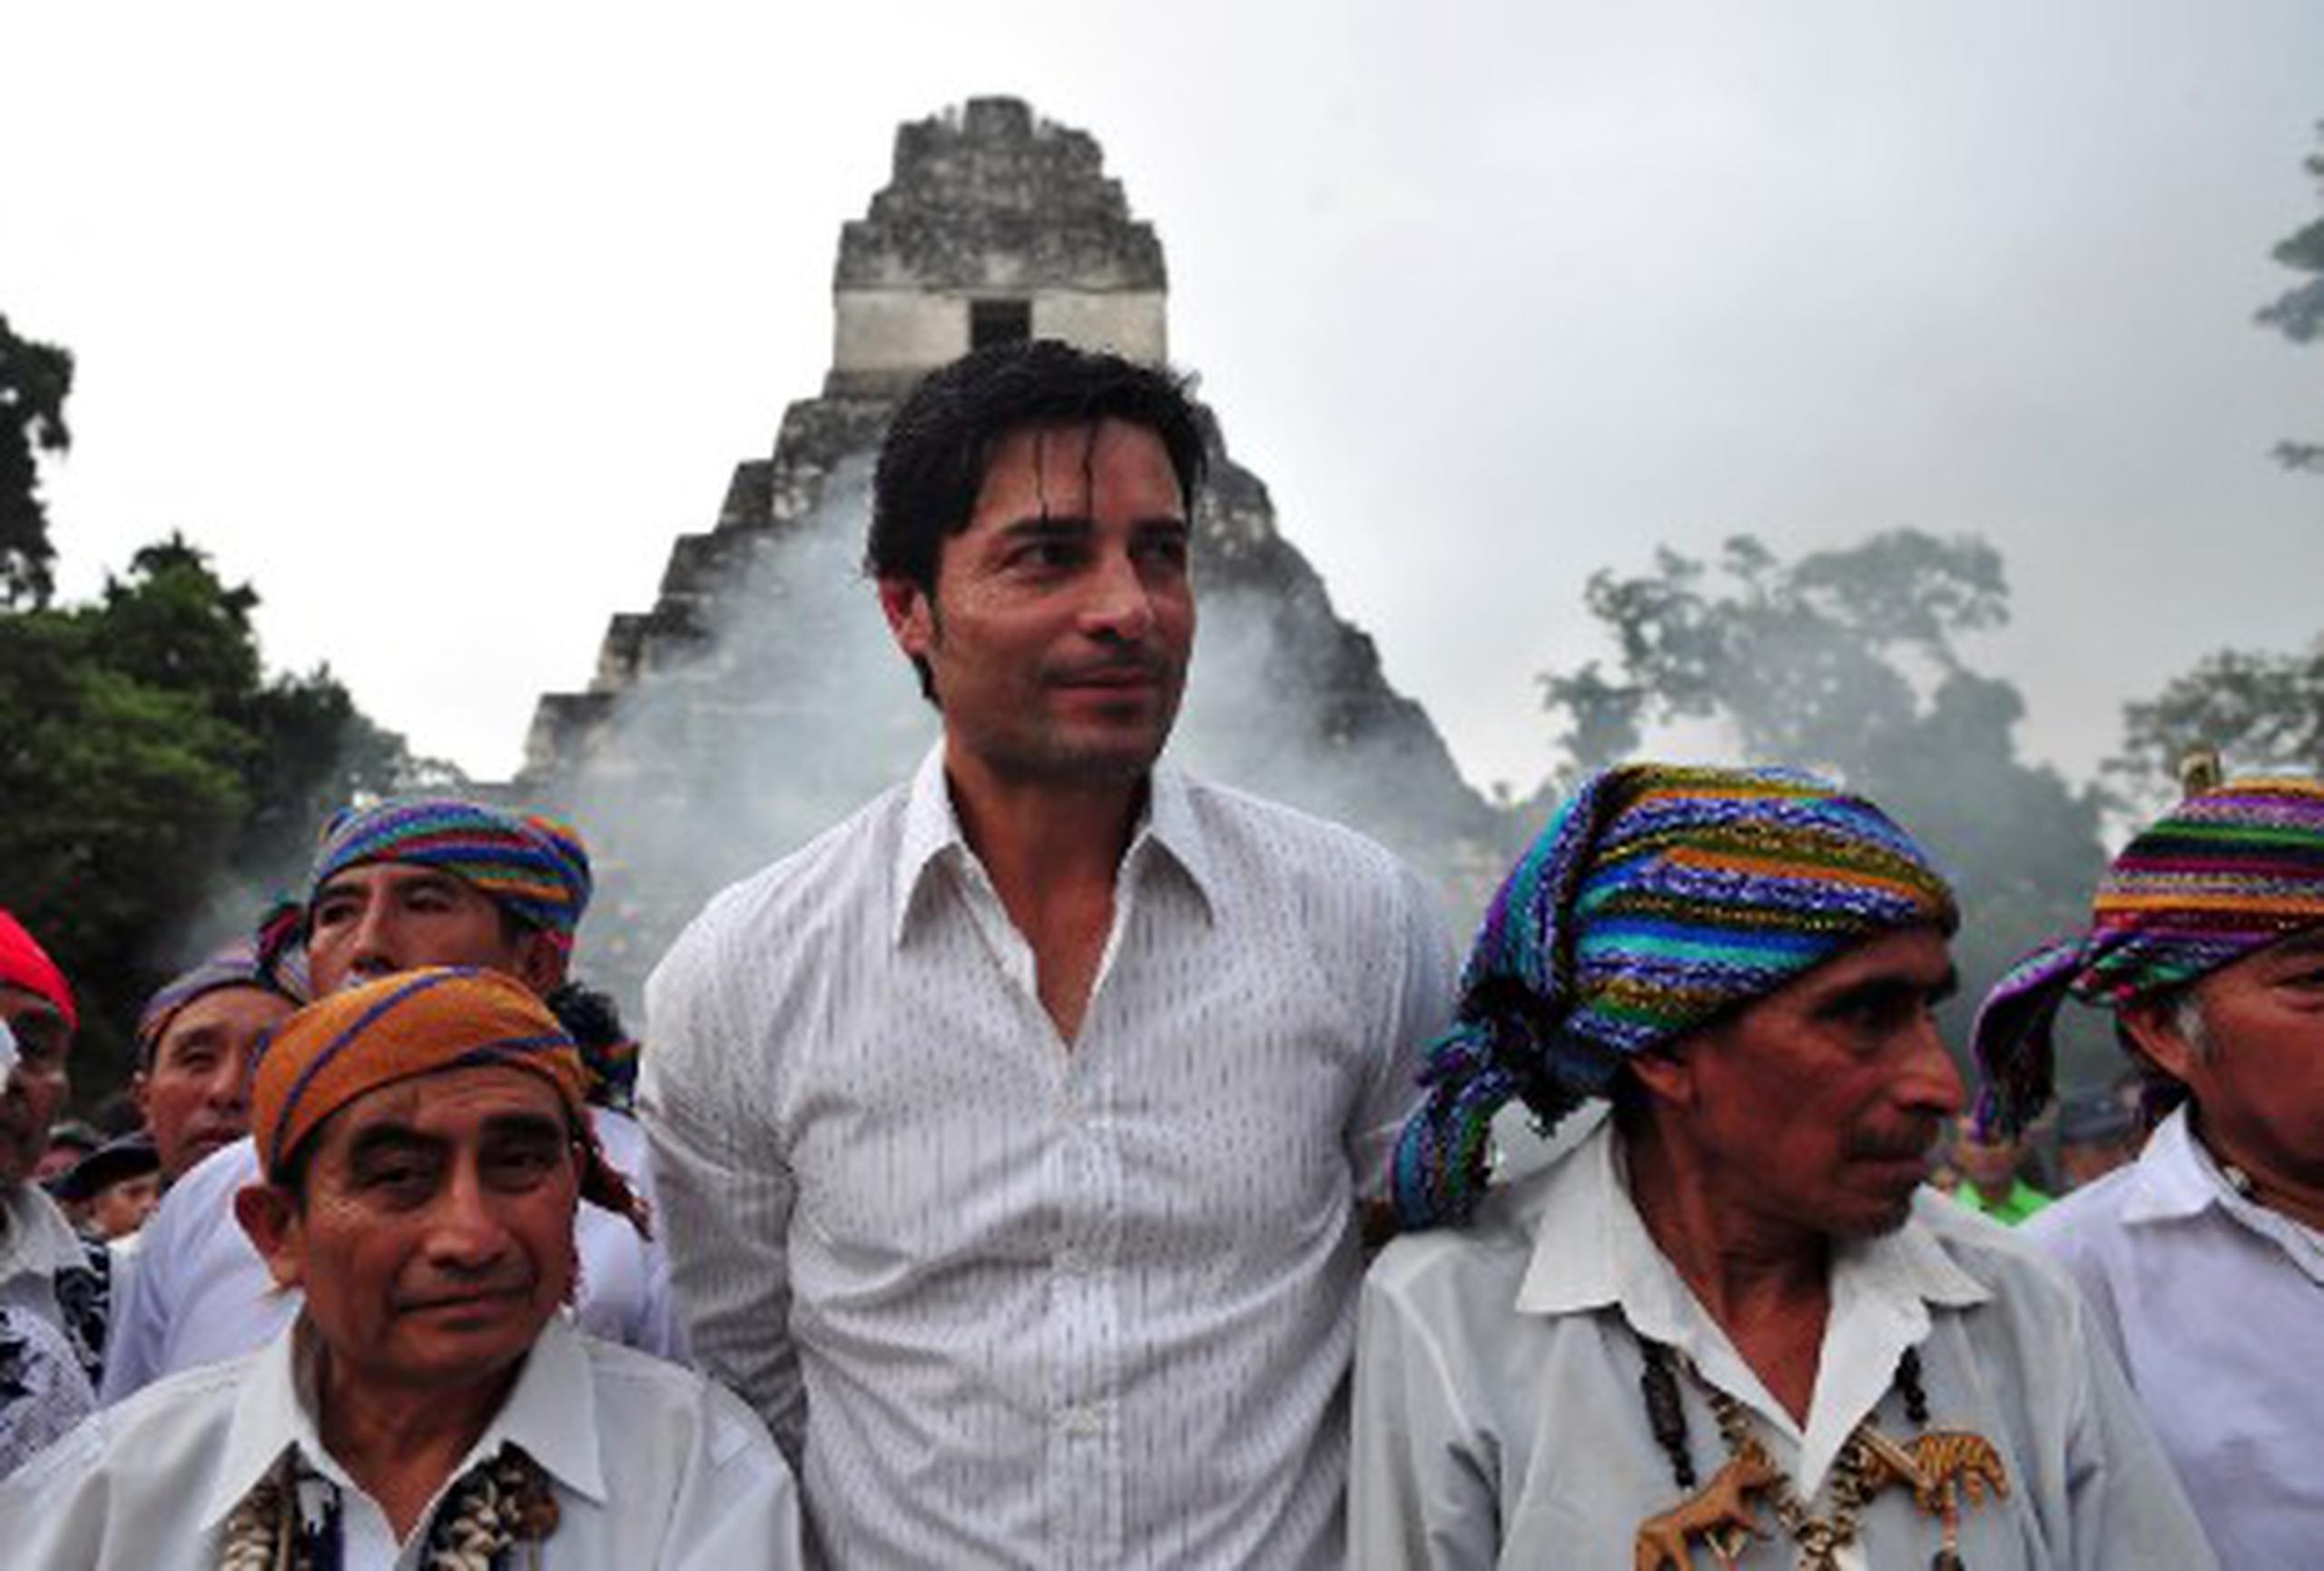 El cantante Chayanne celebró el fin de la era maya en las ruinas del parque Tikal en Guatemala. (AFP/Héctor Retamal)